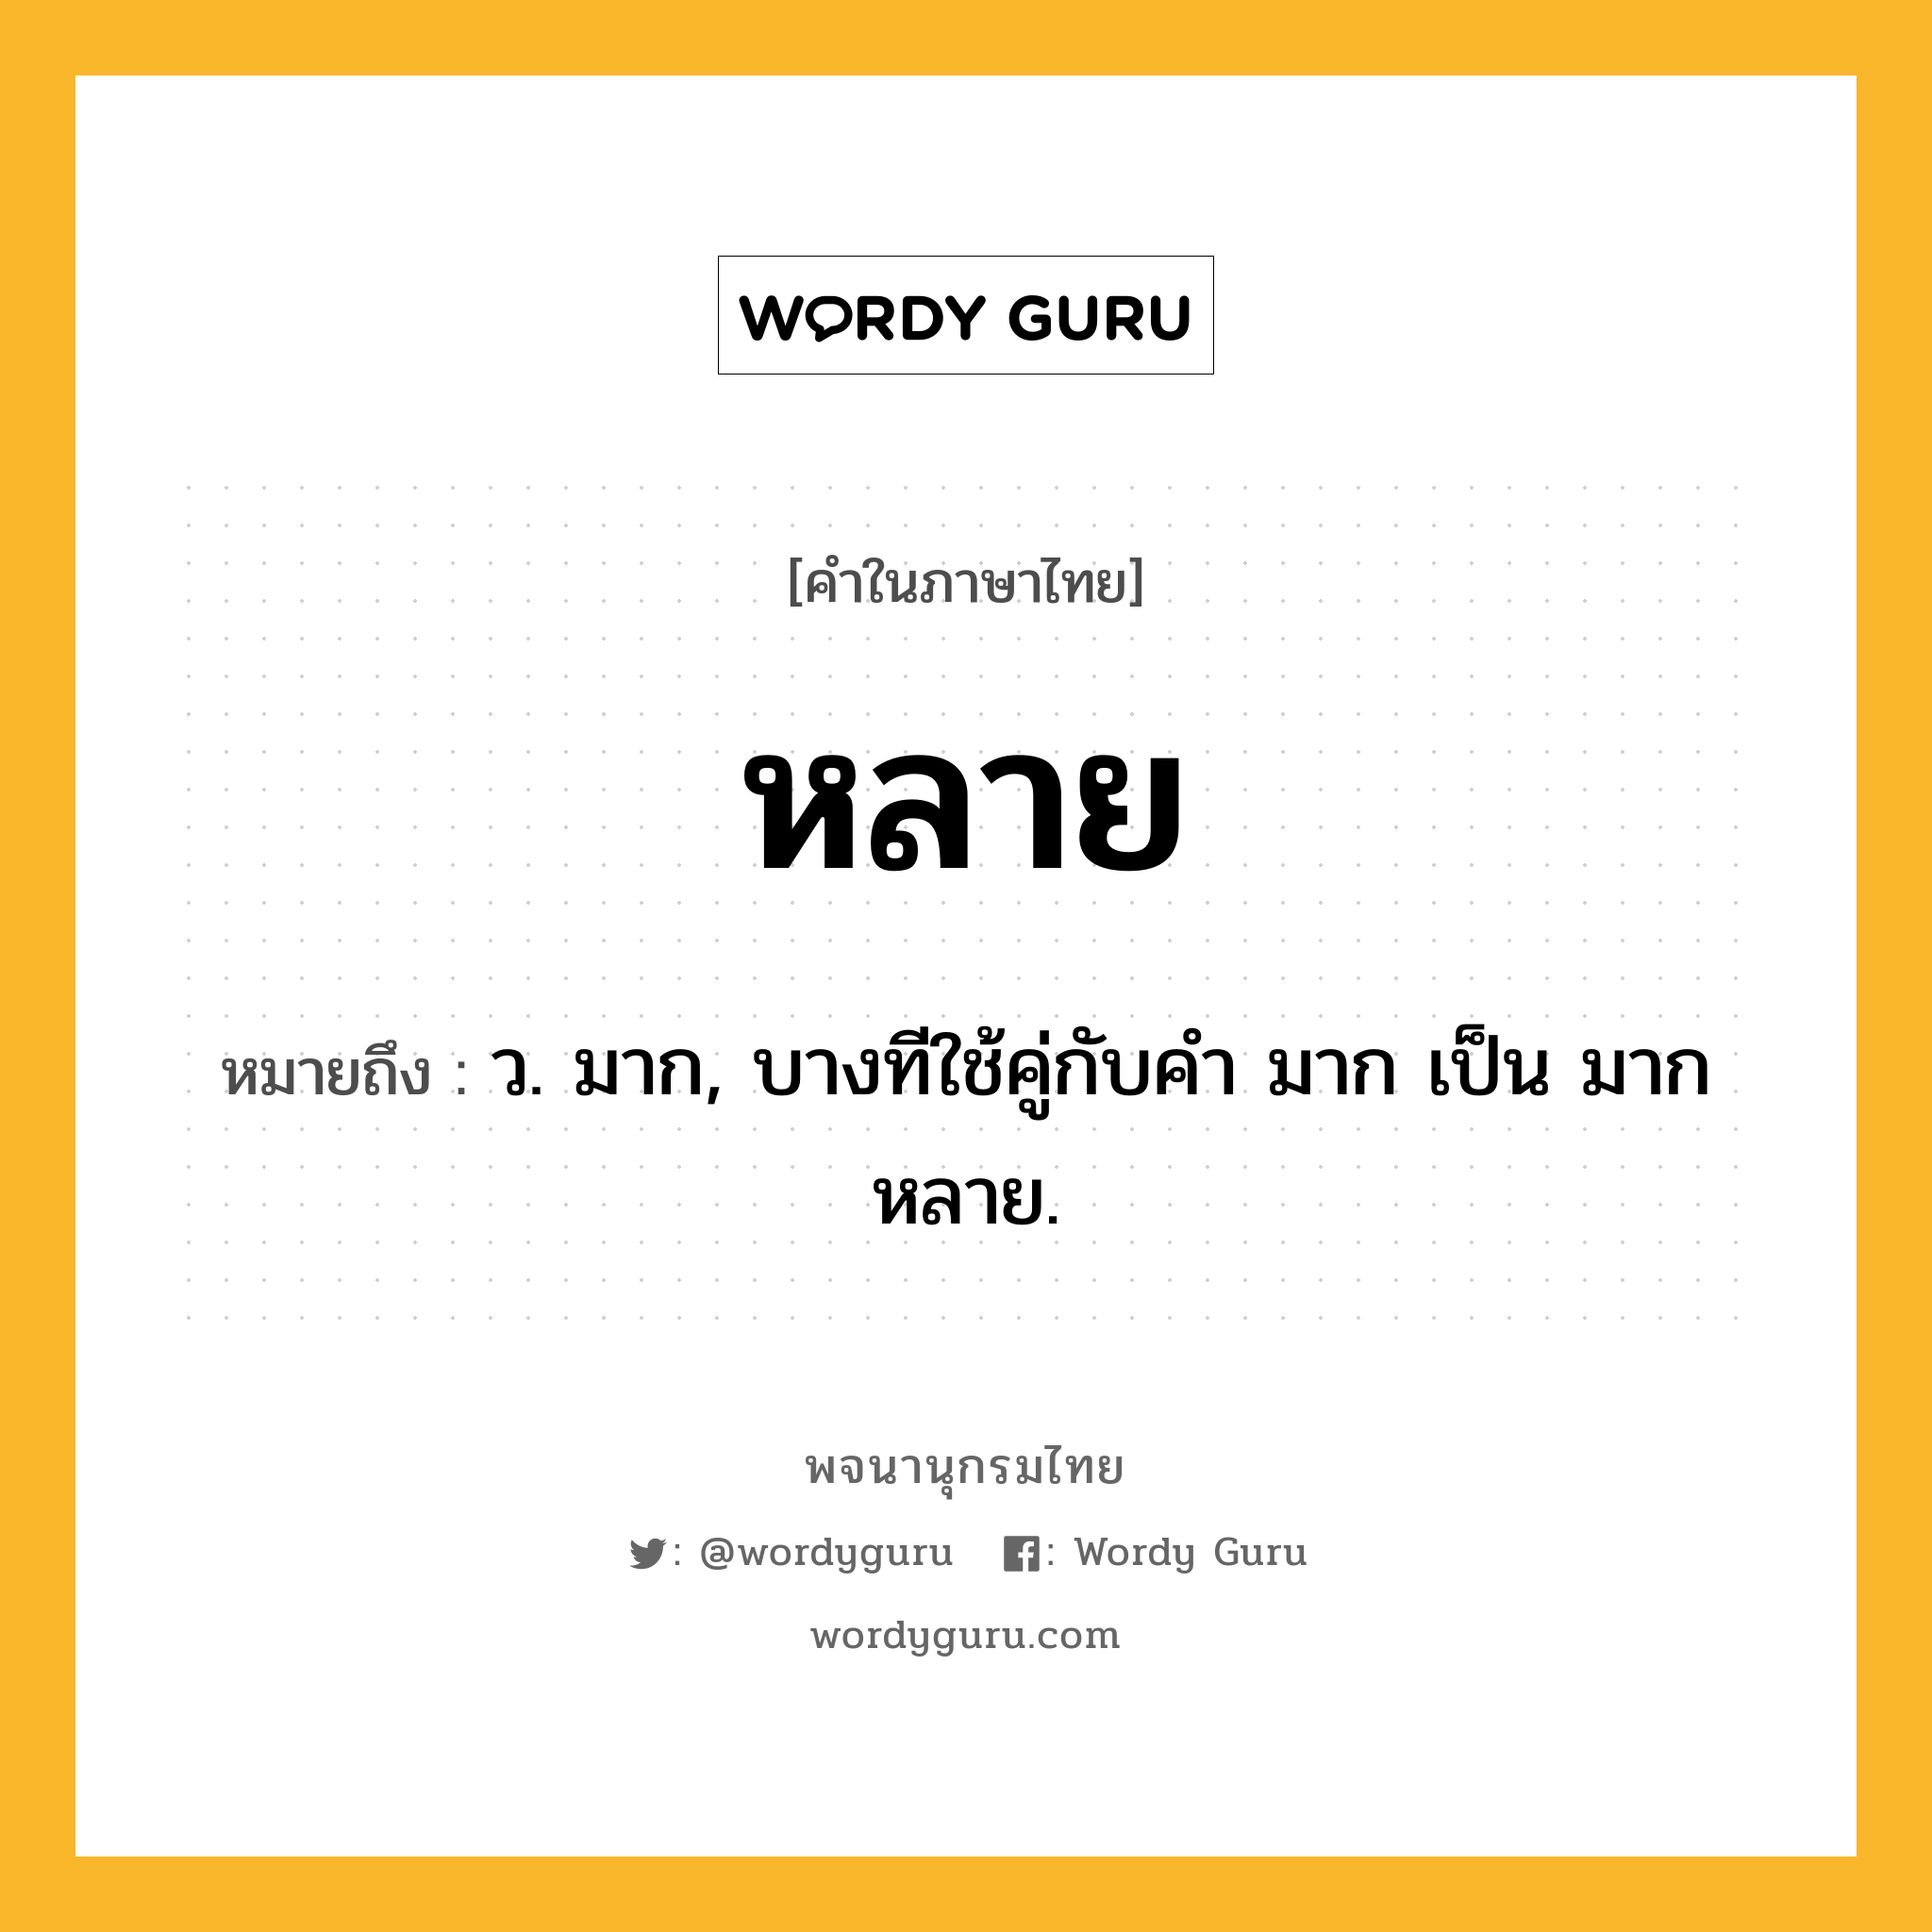 หลาย หมายถึงอะไร?, คำในภาษาไทย หลาย หมายถึง ว. มาก, บางทีใช้คู่กับคำ มาก เป็น มากหลาย.